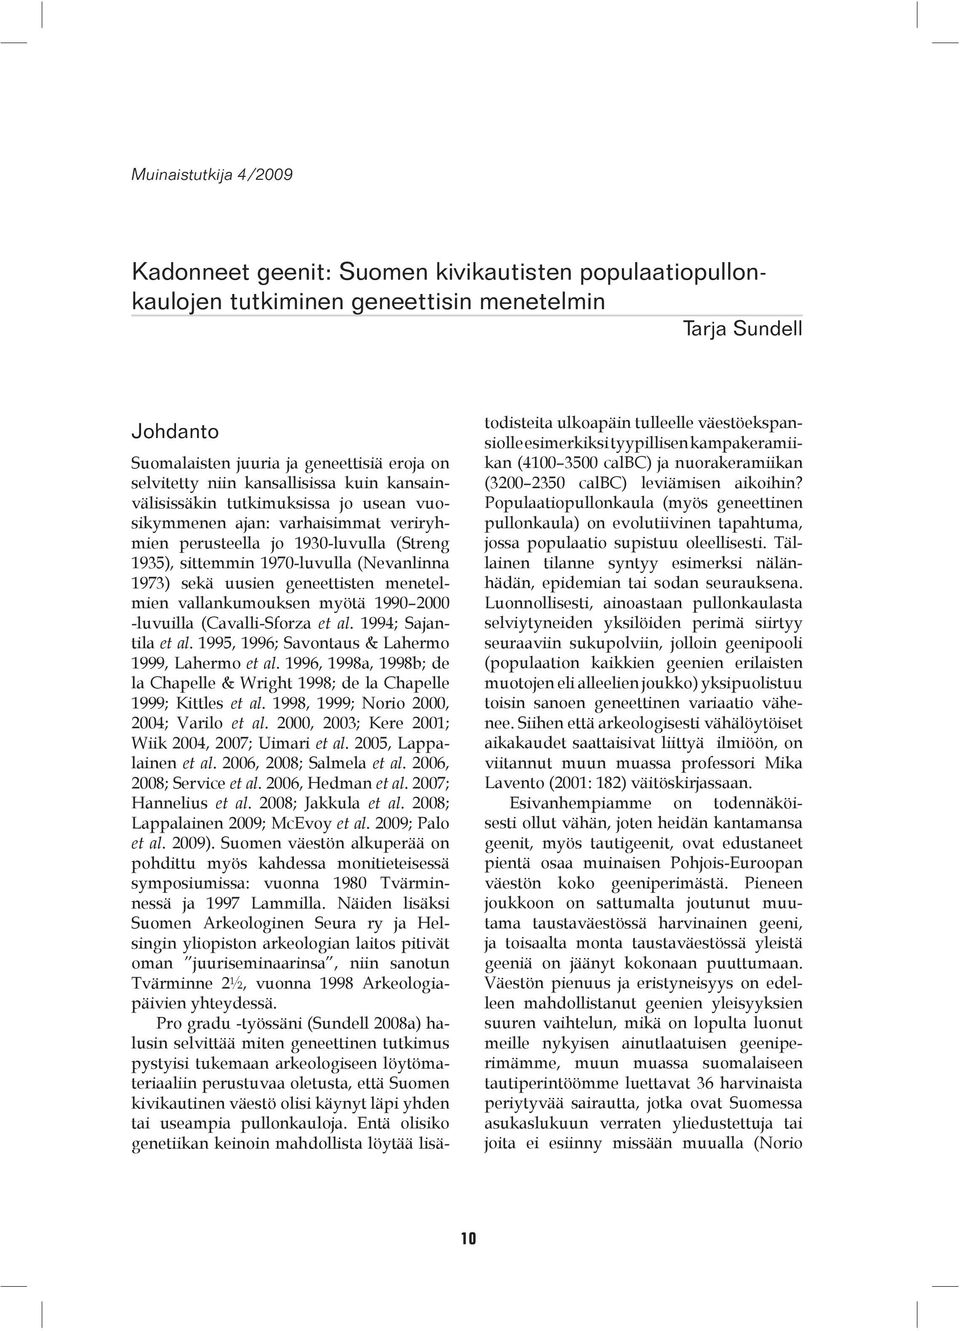 sekä uusien geneettisten menetelmien vallankumouksen myötä 1990 2000 -luvuilla (Cavalli-Sforza et al. 1994; Sajantila et al. 1995, 1996; Savontaus & Lahermo 1999, Lahermo et al.